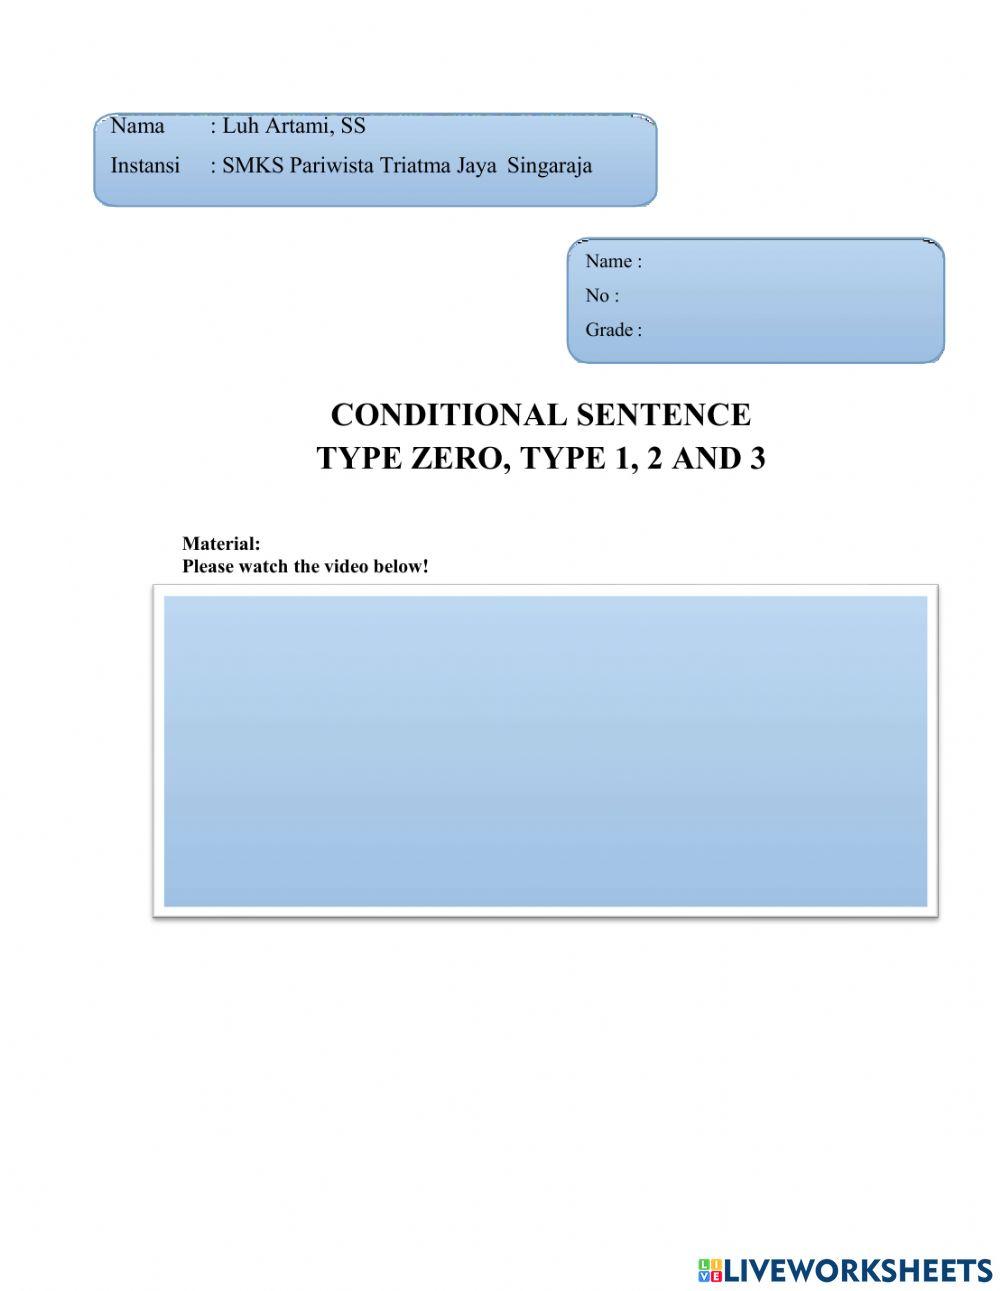 Conditional sentence type zero, type 1,2 and 3